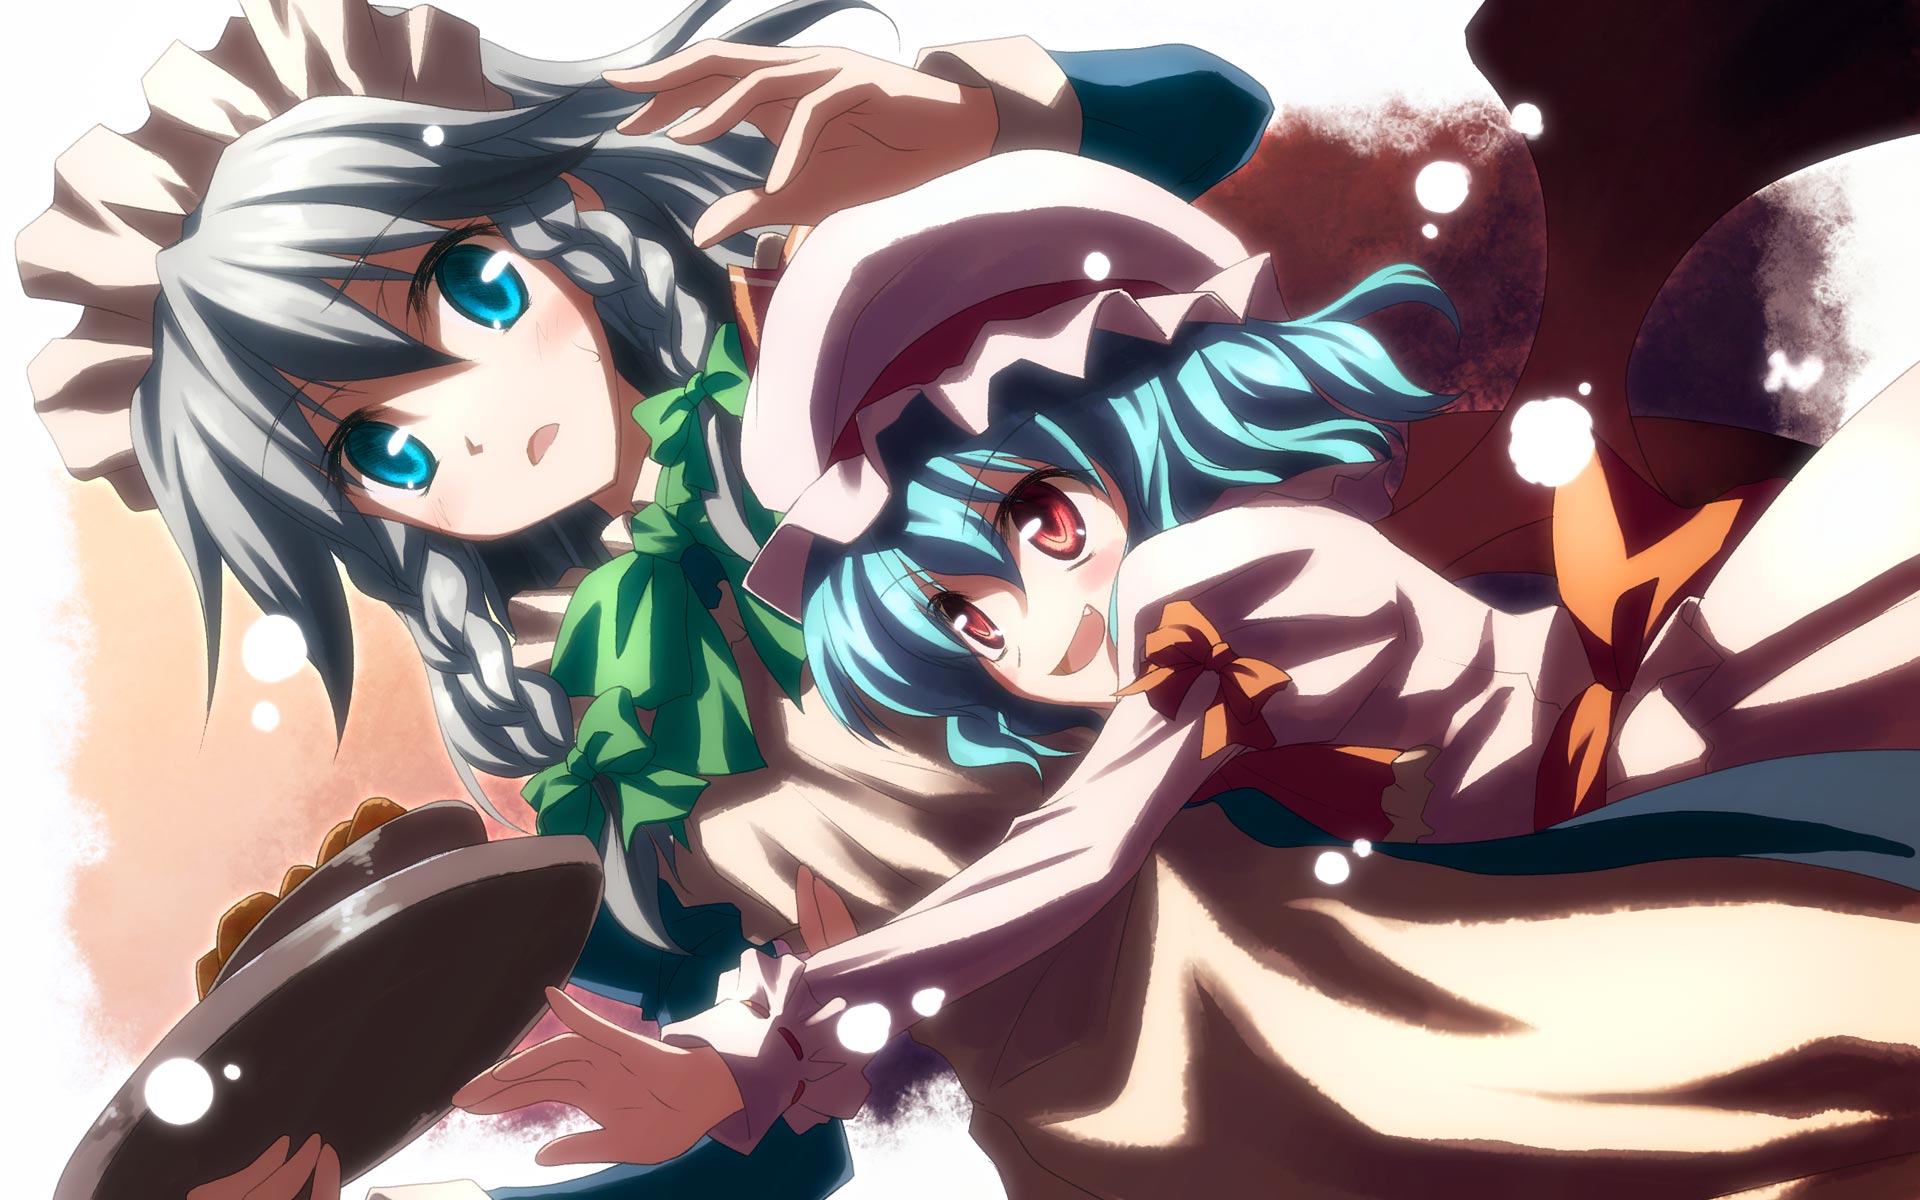 Download mobile wallpaper Anime, Remilia Scarlet, Touhou, Sakuya Izayoi for free.